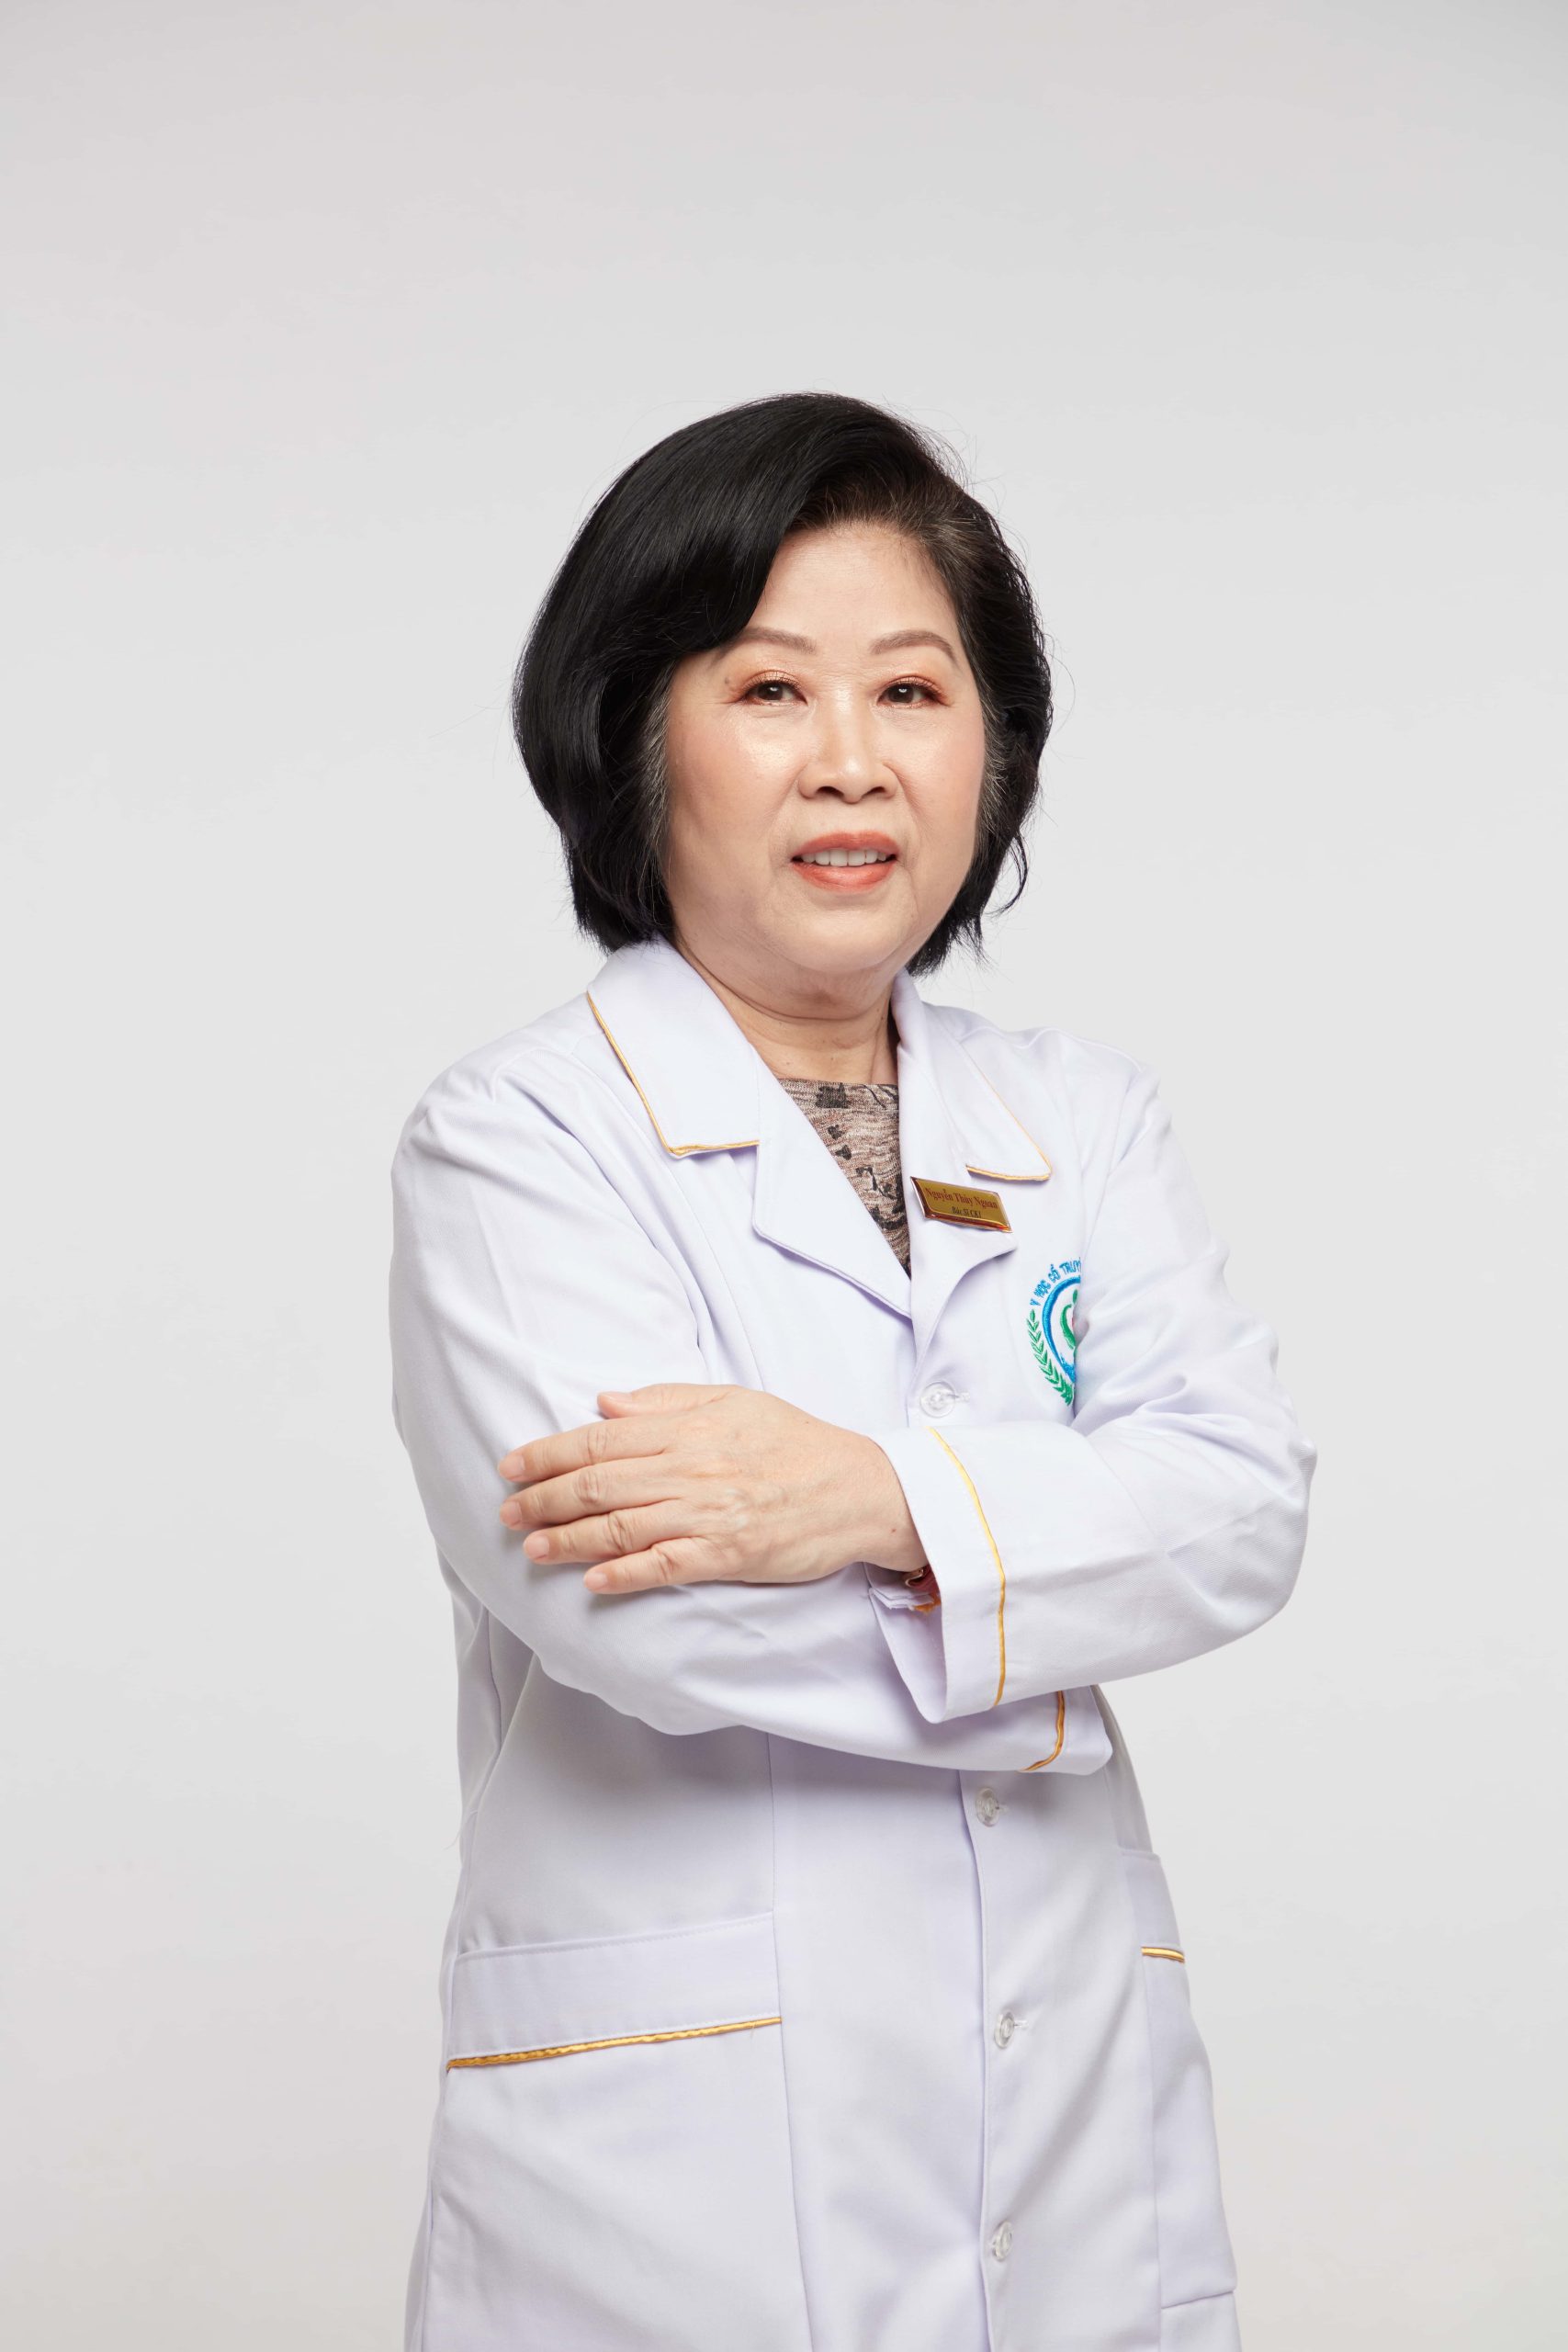 Bác sĩ Nguyễn Thùy Ngoan là một trong những bác sĩ chữa trào ngược dạ dày giỏi nhất TPHCM hiện nay